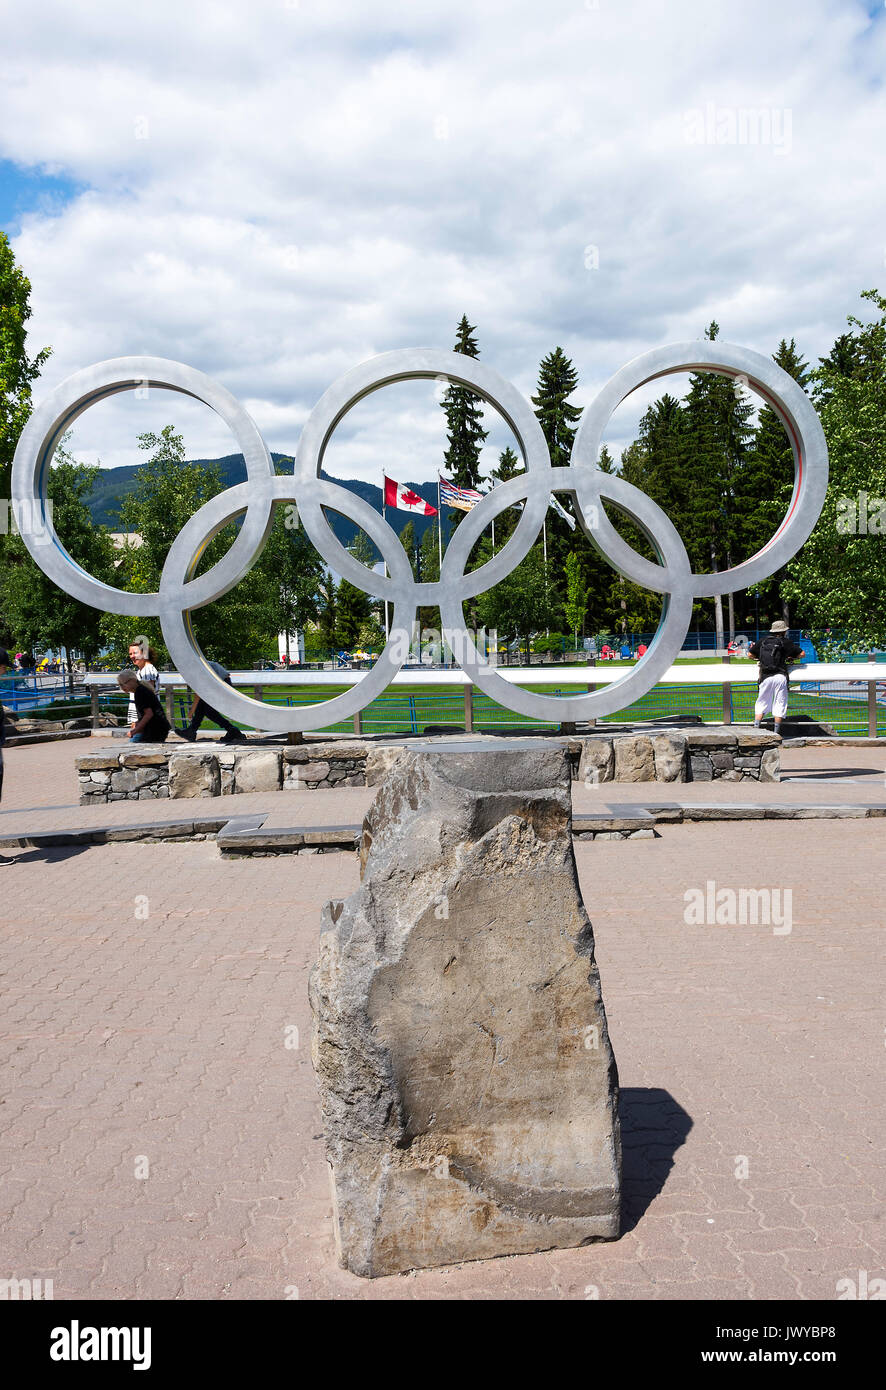 Le symbole des cinq anneaux olympiques pour les Jeux Olympiques d'hiver de 2010 dans la ville de Whistler British Columbia Canada Banque D'Images